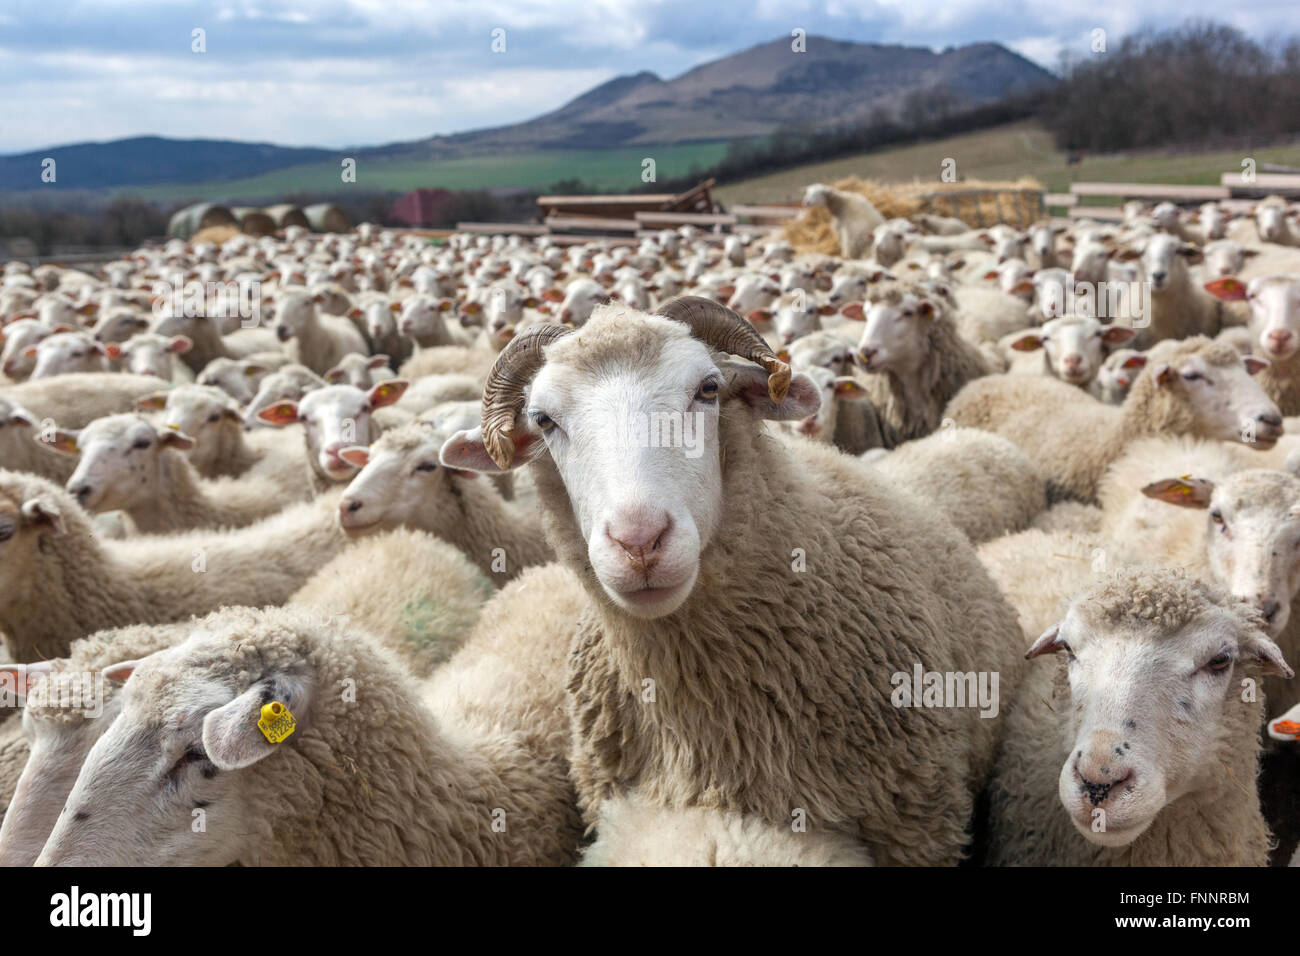 RAM zwischen Schafherden Schafherden Schafzucht im Mittelböhmischen Hochland ländliche Tschechische Republik Schafherde Nutztiere Nutztierzuchtgruppe landwirtschaftliche Nutzflächen Stockfoto